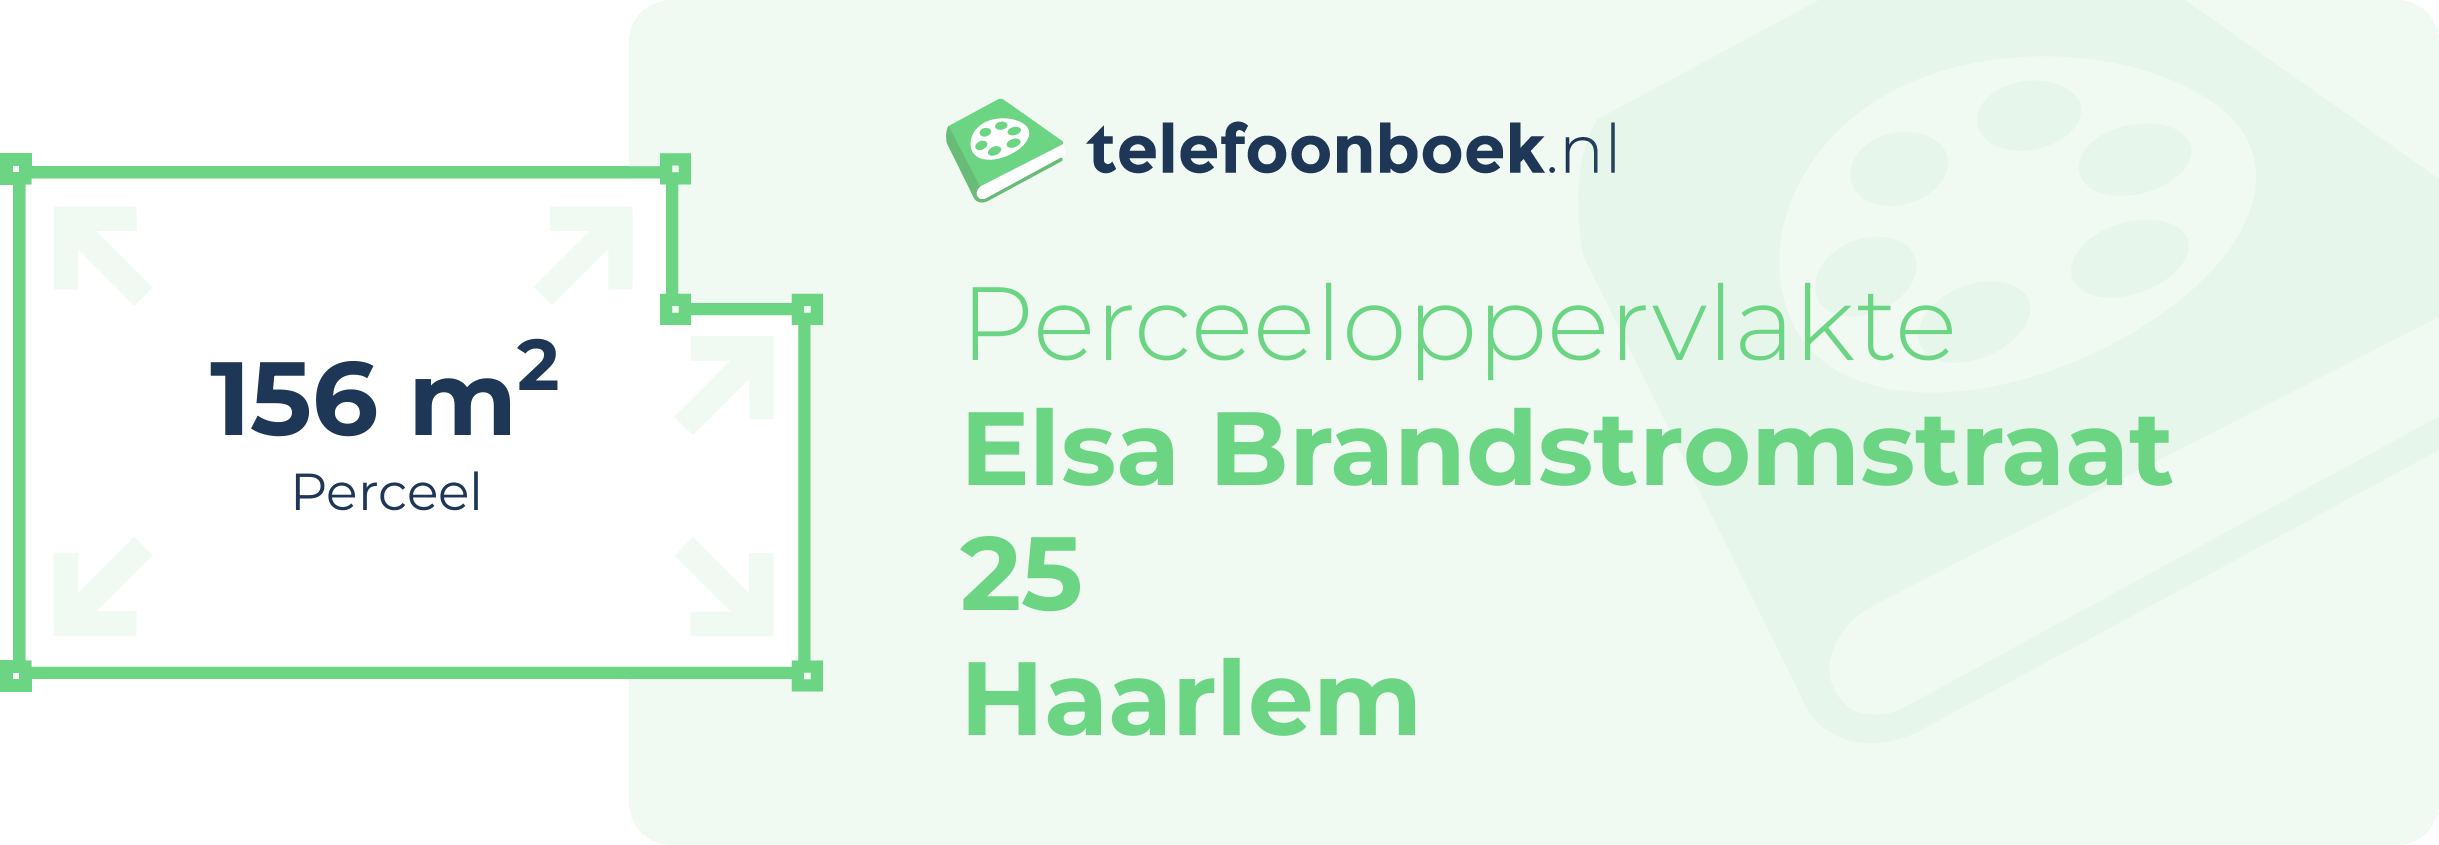 Perceeloppervlakte Elsa Brandstromstraat 25 Haarlem